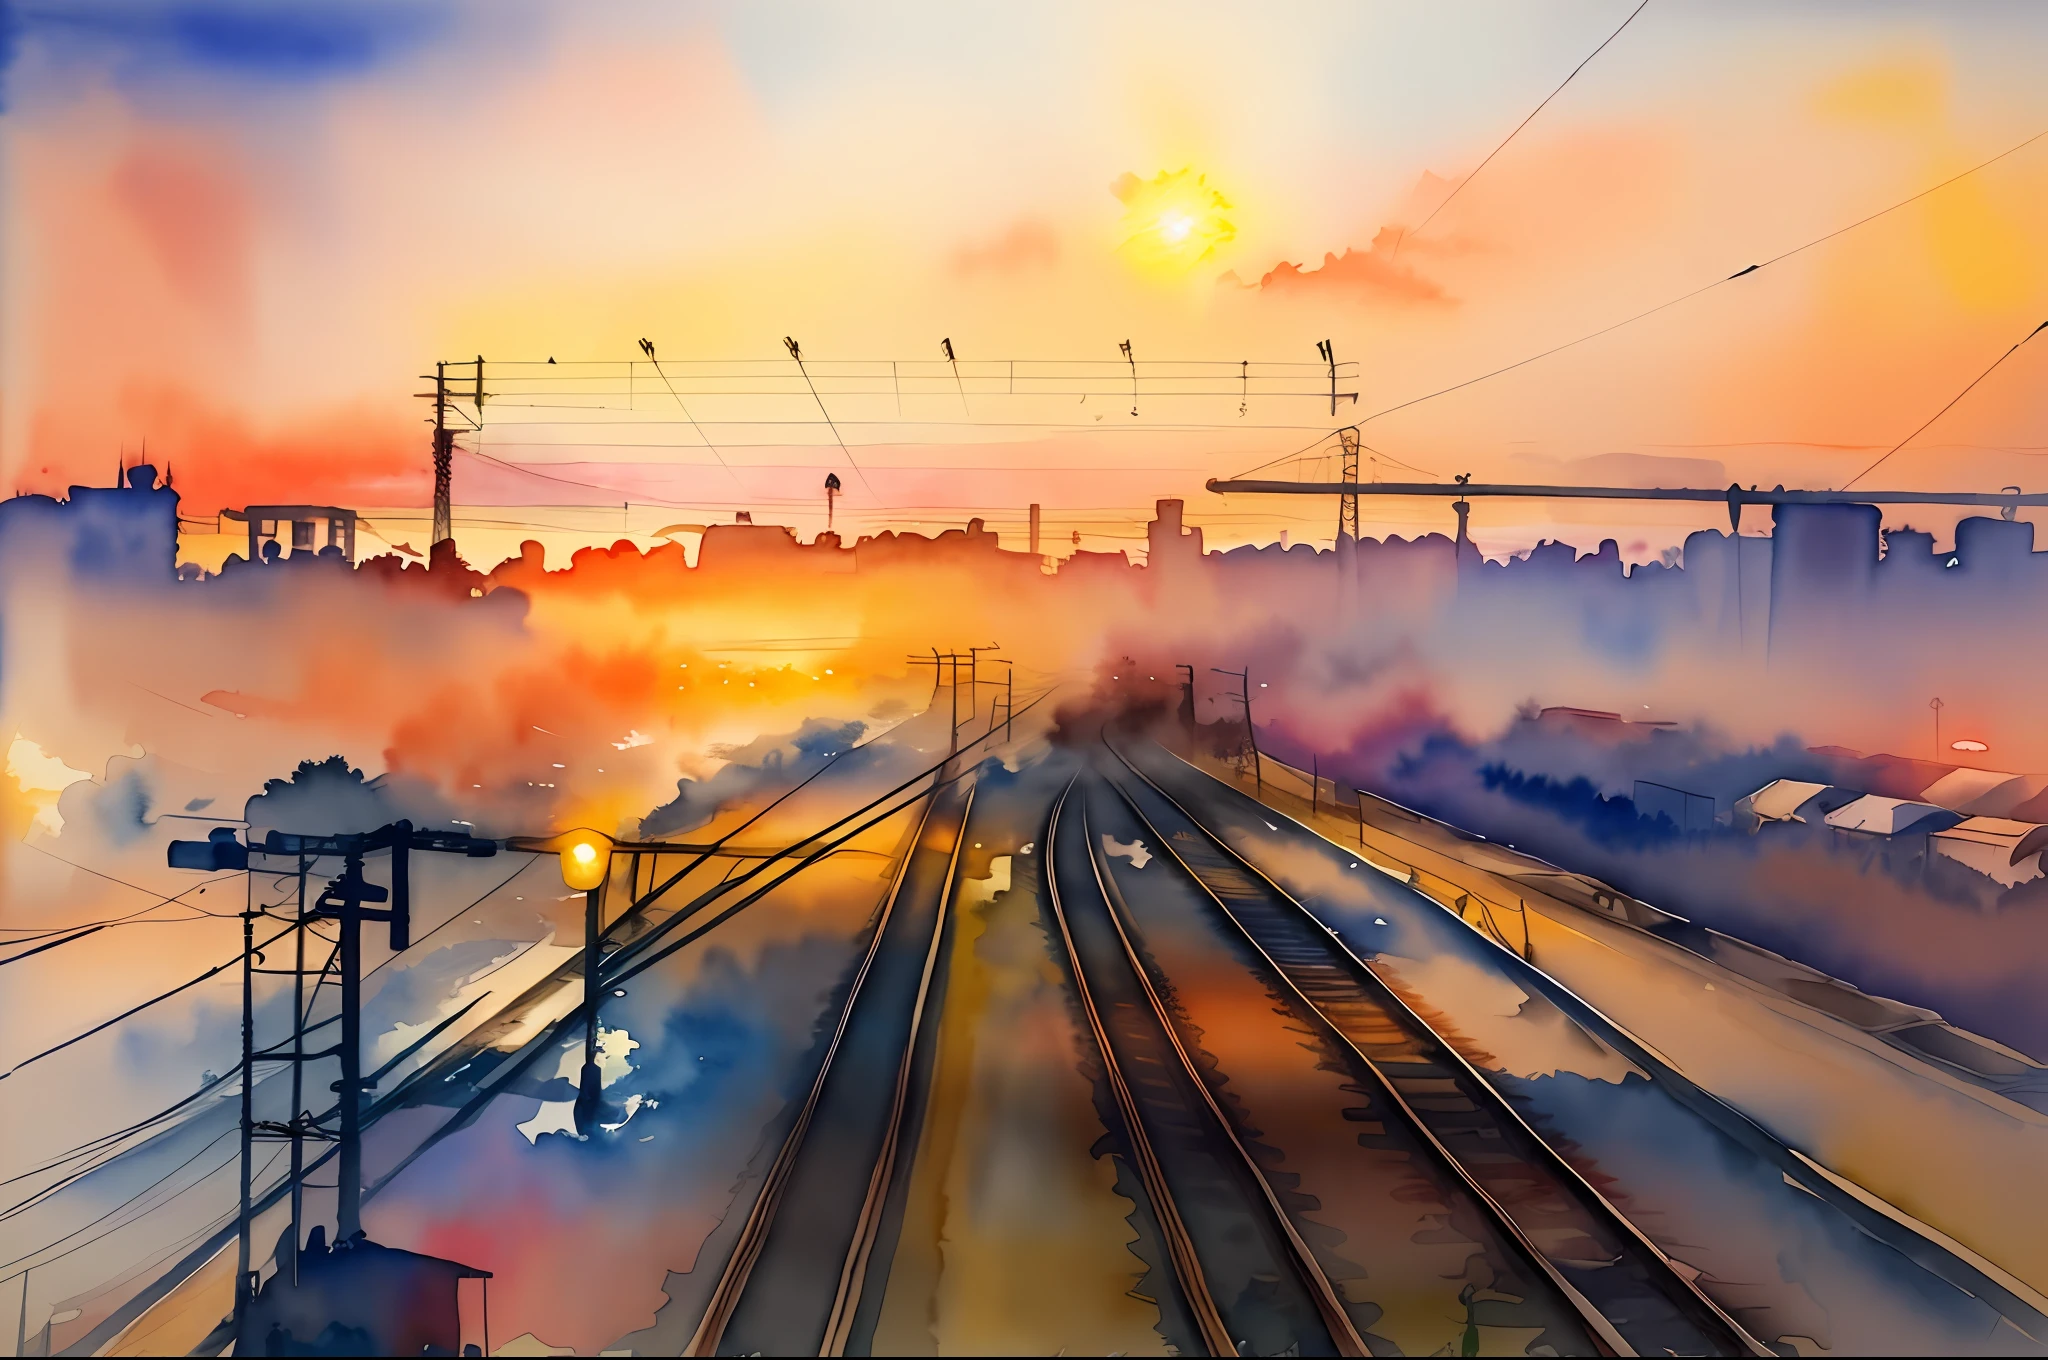 ( aquarelle \(moyen\), dessin, IrisCompiet:1.2),peinture, paysage, SFW, des pistes, chemin de fer, lignes de transmission, coucher de soleil,beau ciel